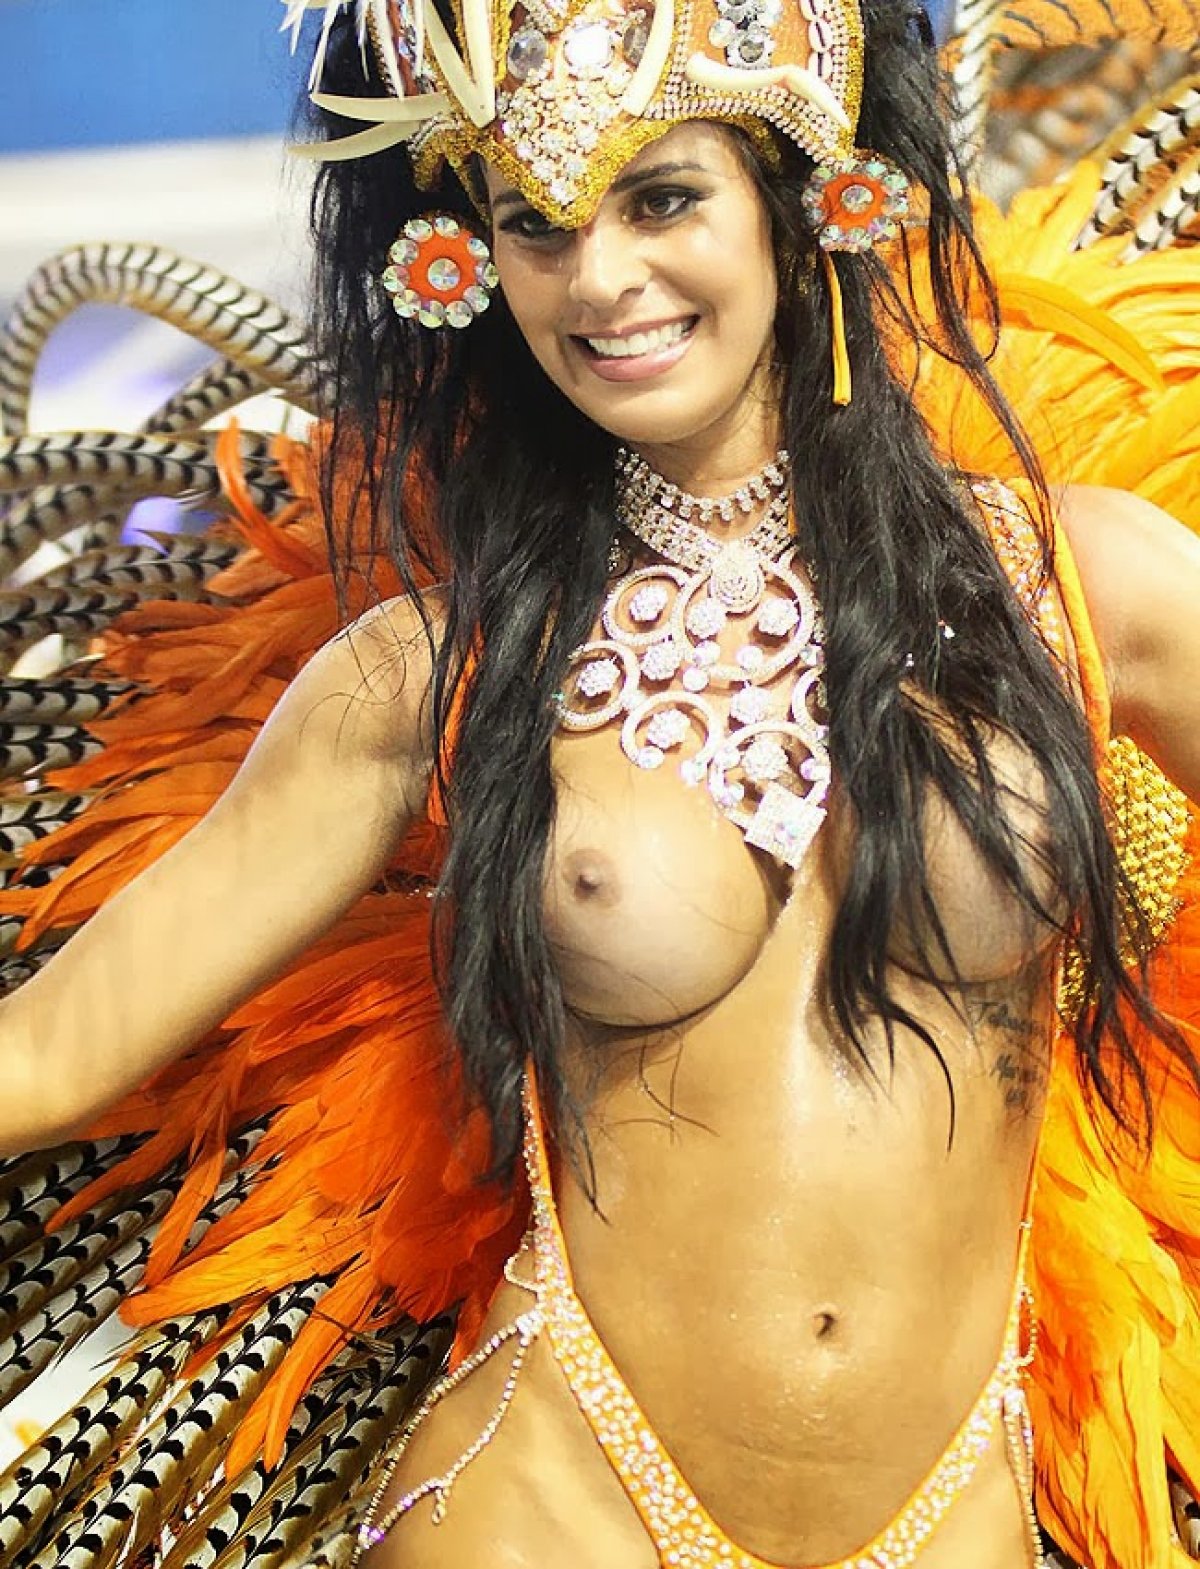 Секс порно карнавал бразилии - порно видео смотреть онлайн на поддоноптом.рф